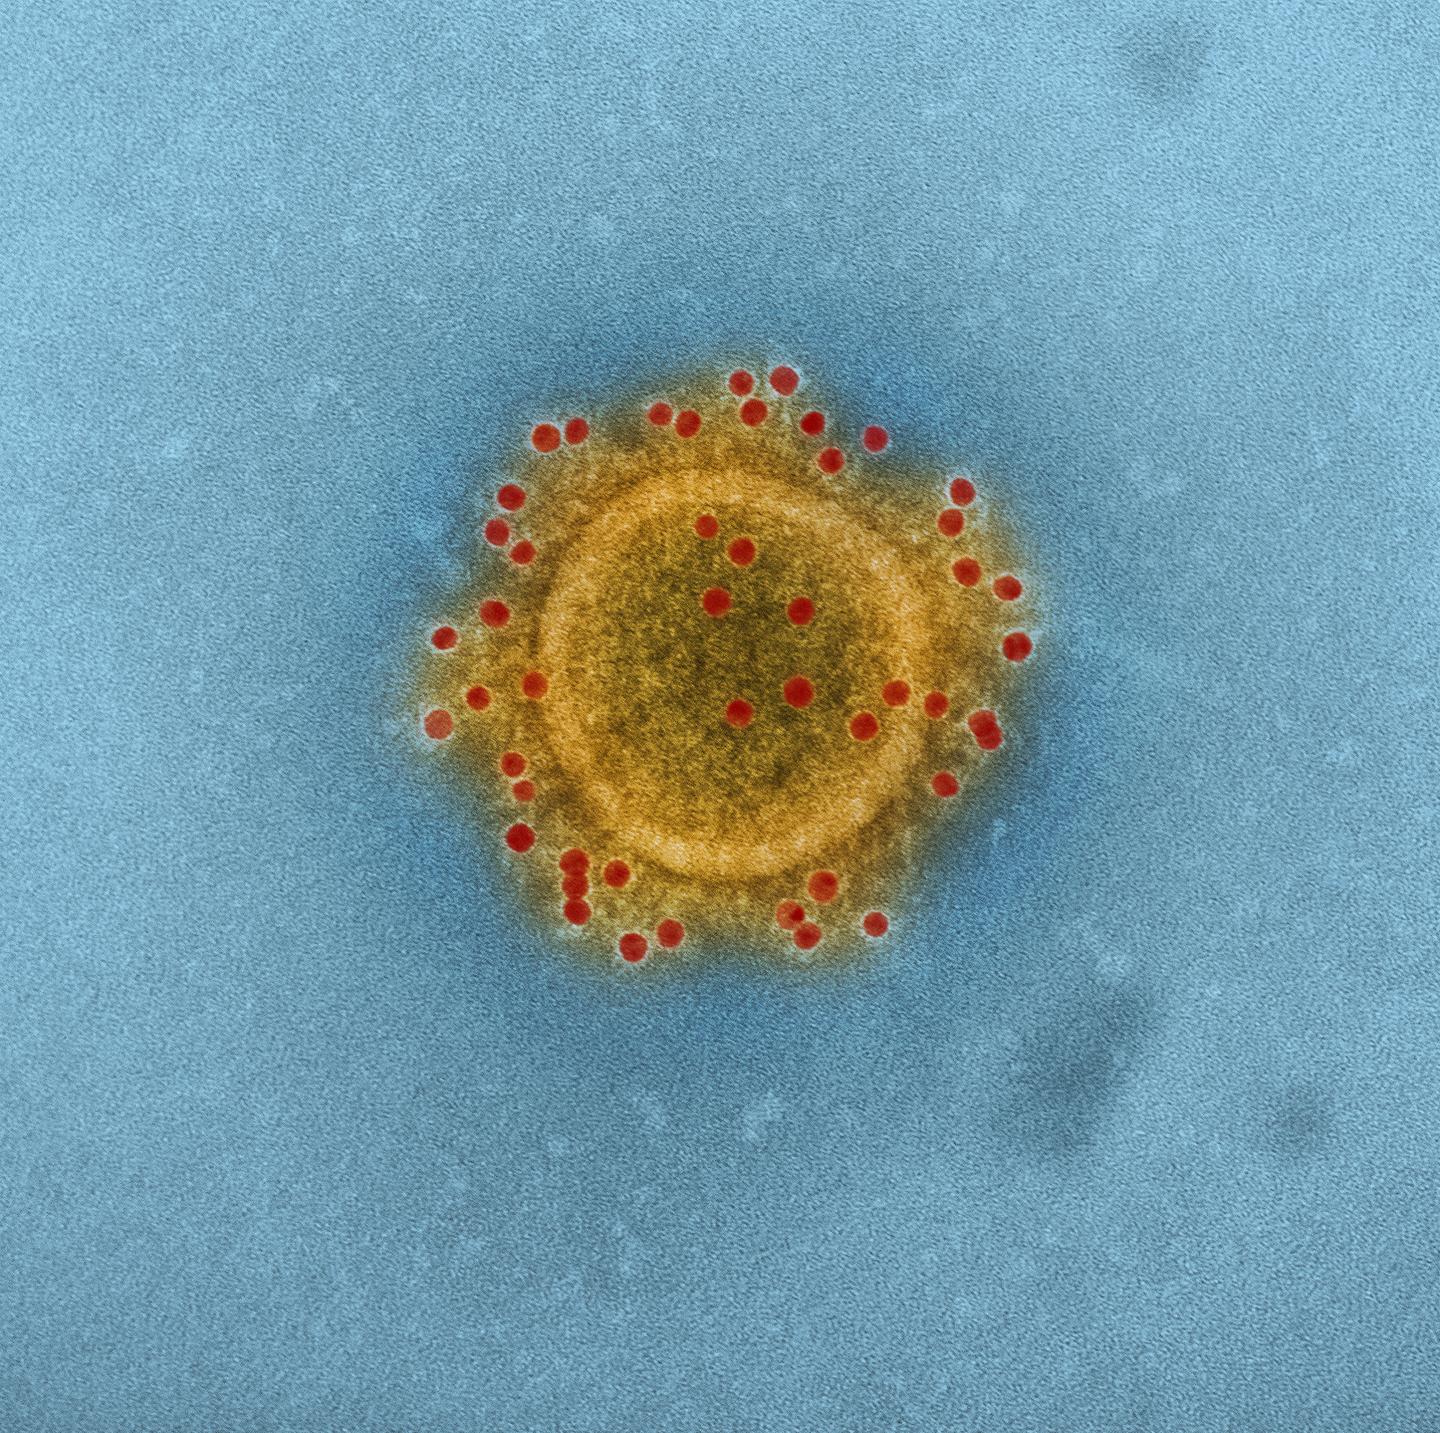 MERS Coronavirus Particle